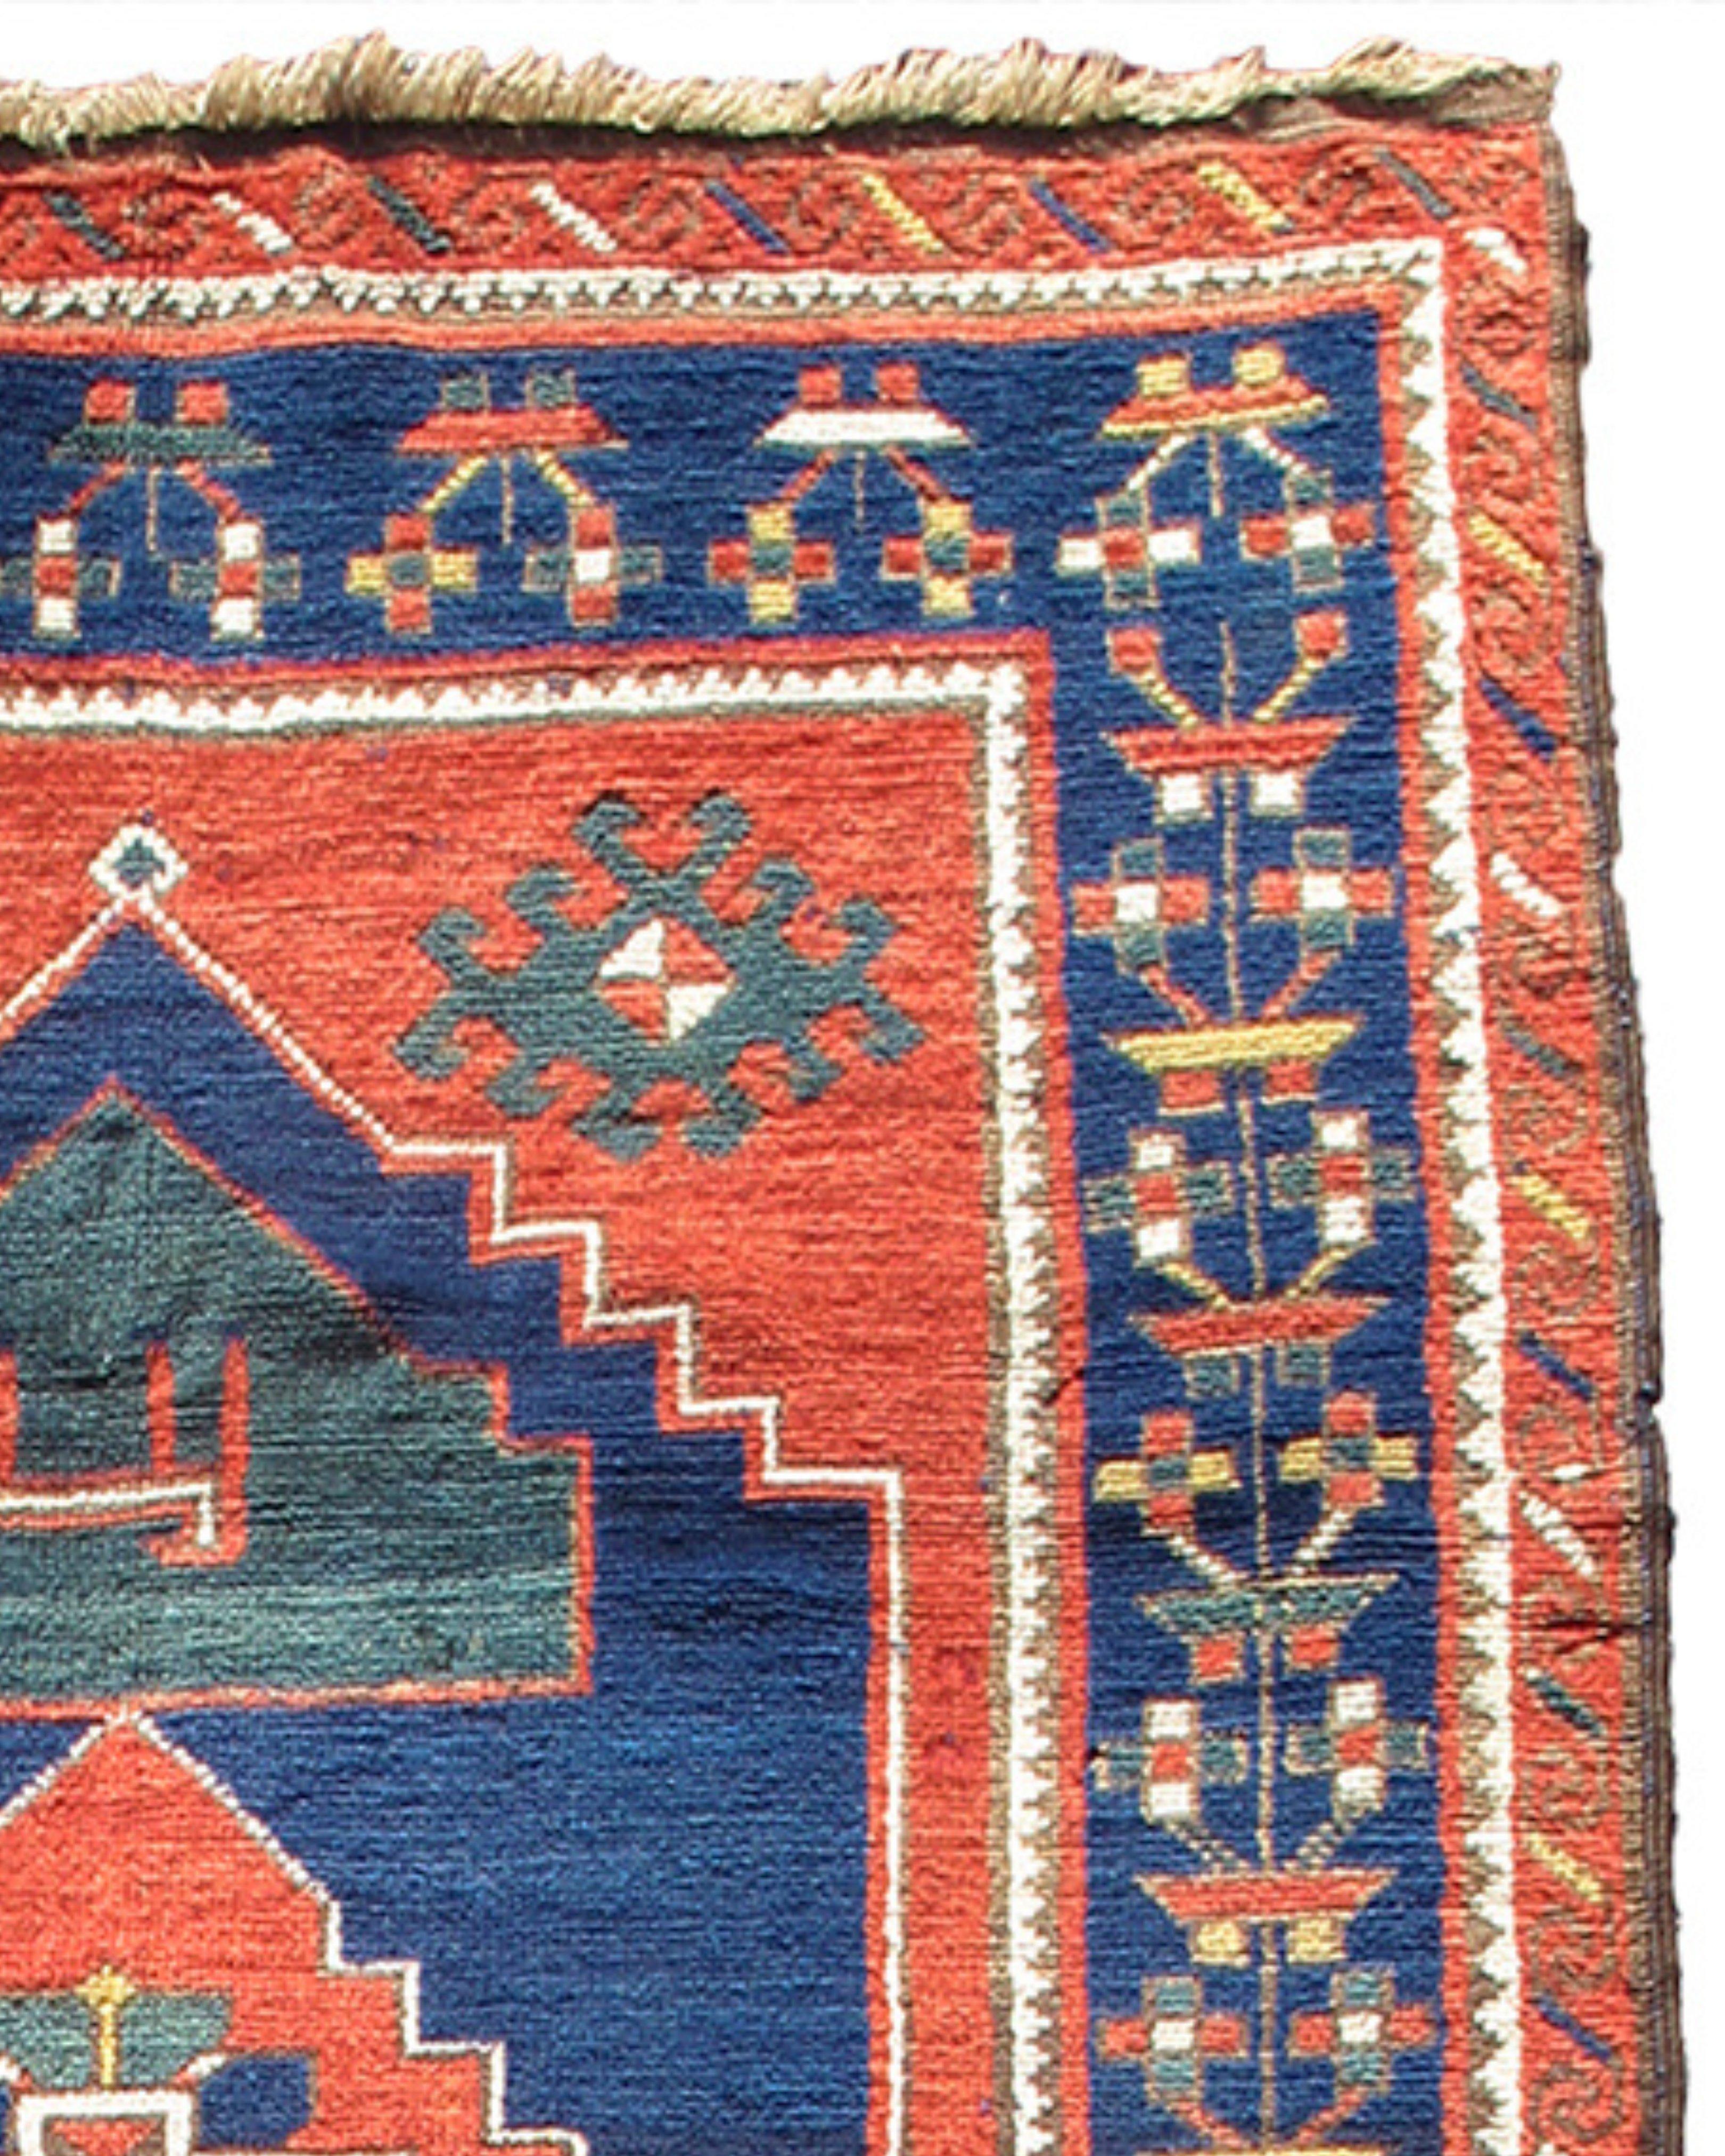 Antiker Karabagh-Teppich, spätes 19. Jahrhundert

Zusätzliche Informationen:
Abmessungen: 4'1